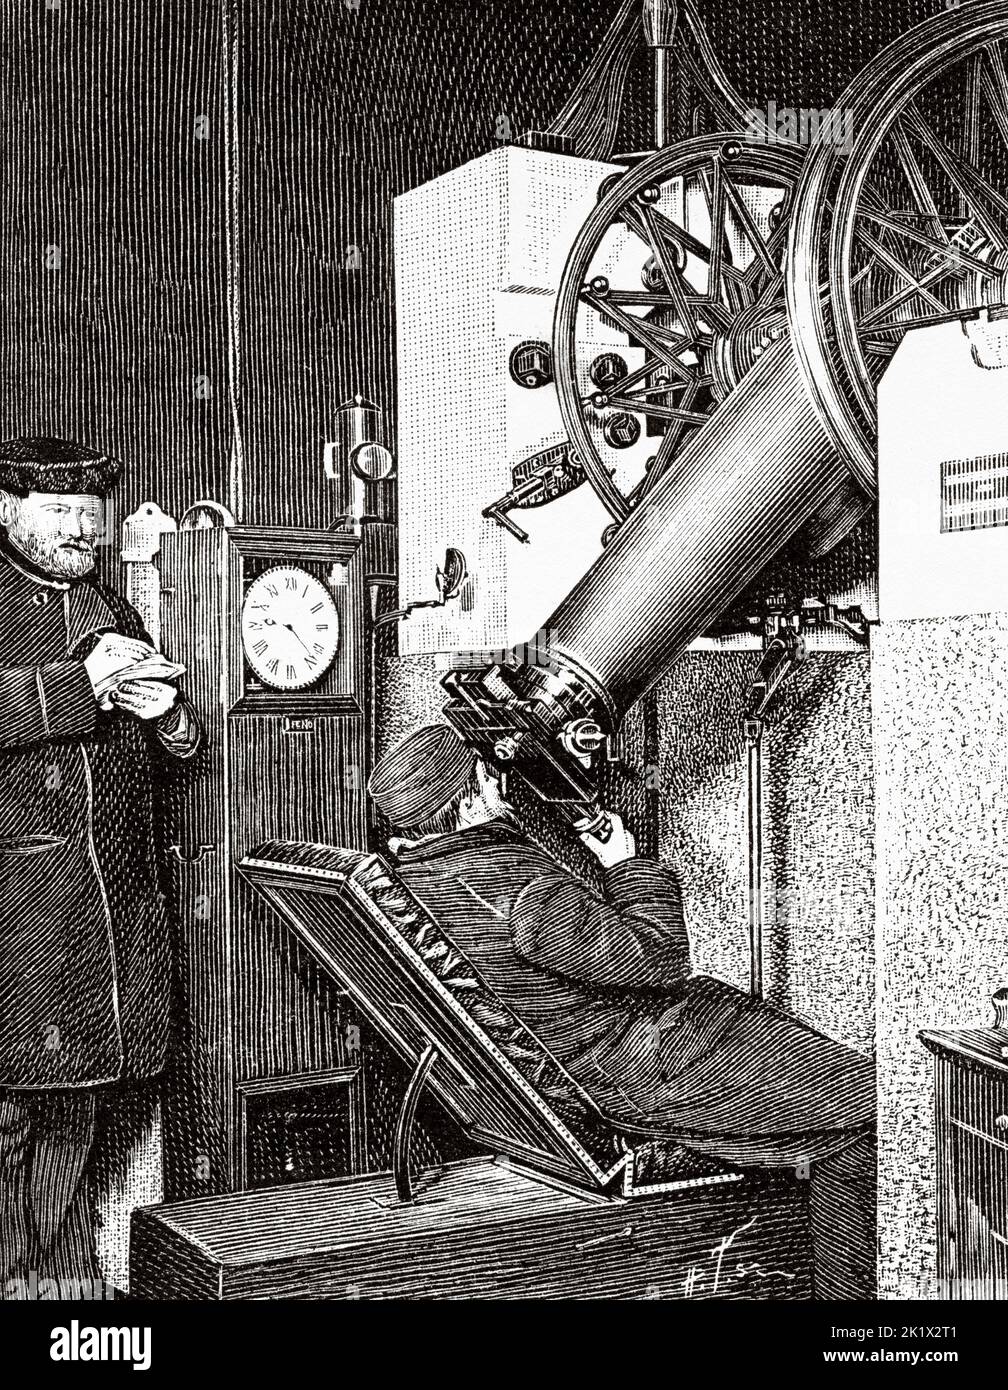 Observatoire astronomique. Télescope de l'observatoire de Paris, France. Europe. Ancienne illustration gravée du 19th siècle de la nature 1890 Banque D'Images